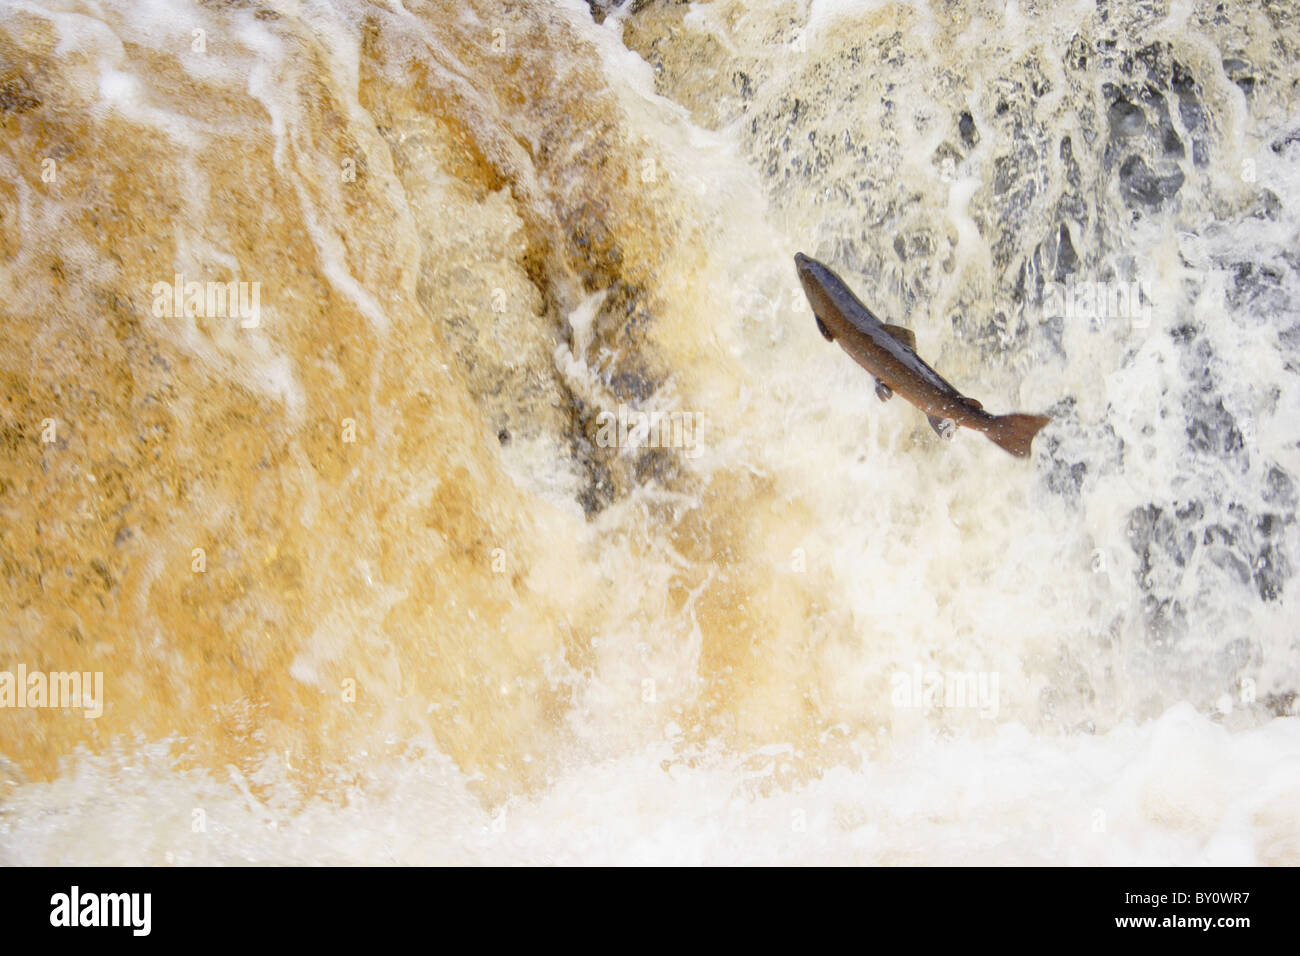 Springende Lachse am Wasserfall, stainforth Kraft, Yorkshire, Großbritannien Stockfoto